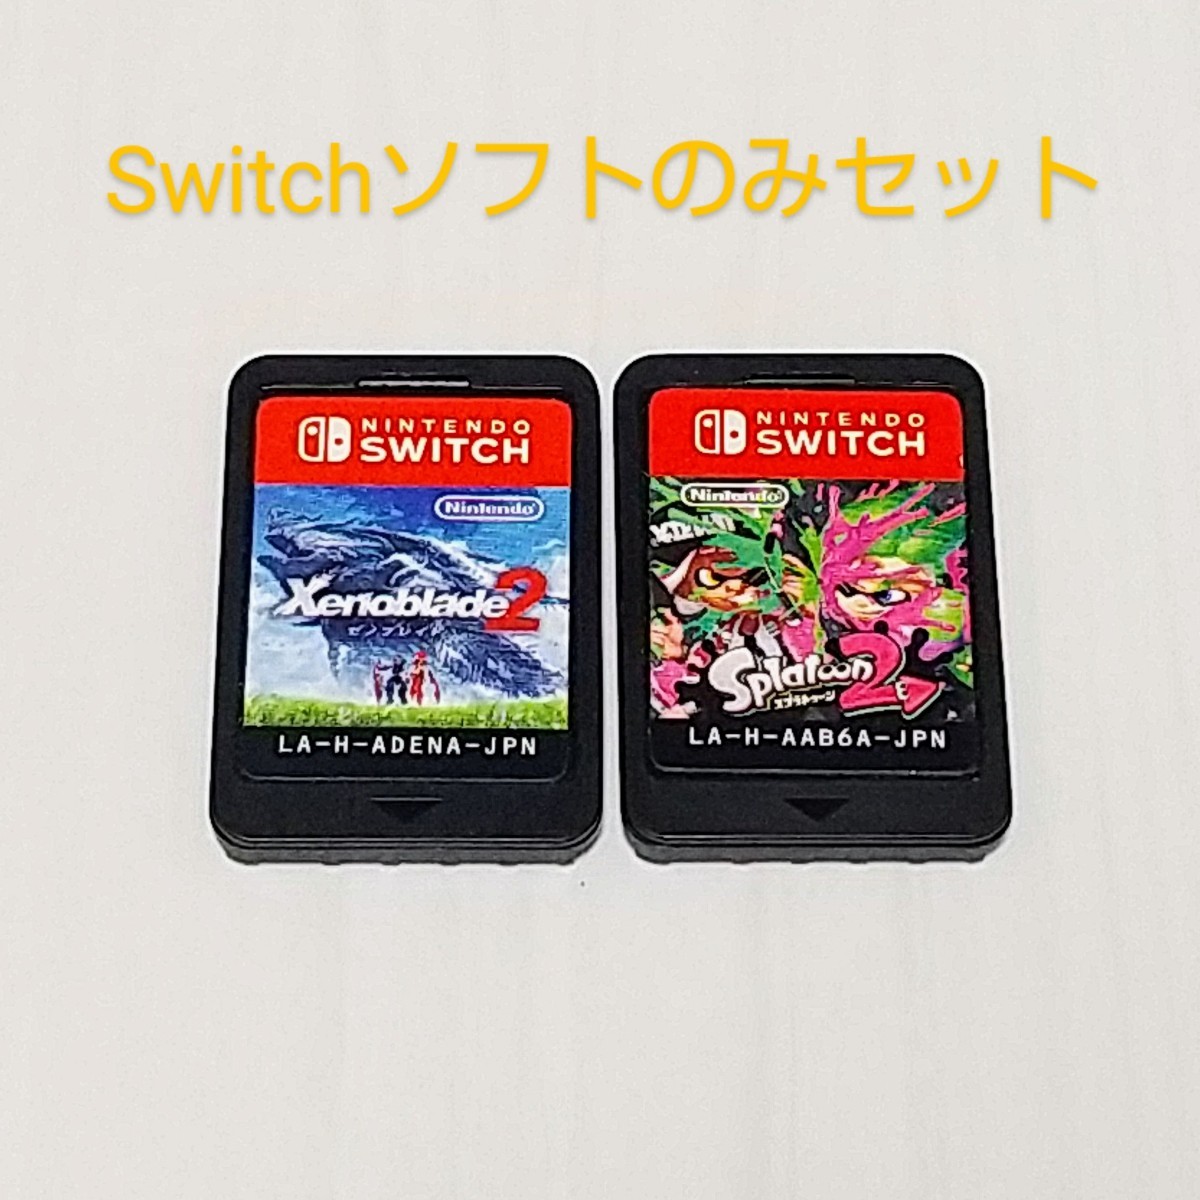 Switchソフトのみ2本セット ゼノブレイド2 スプラトゥーン2 ニンテンドースイッチ Nintendo Switch